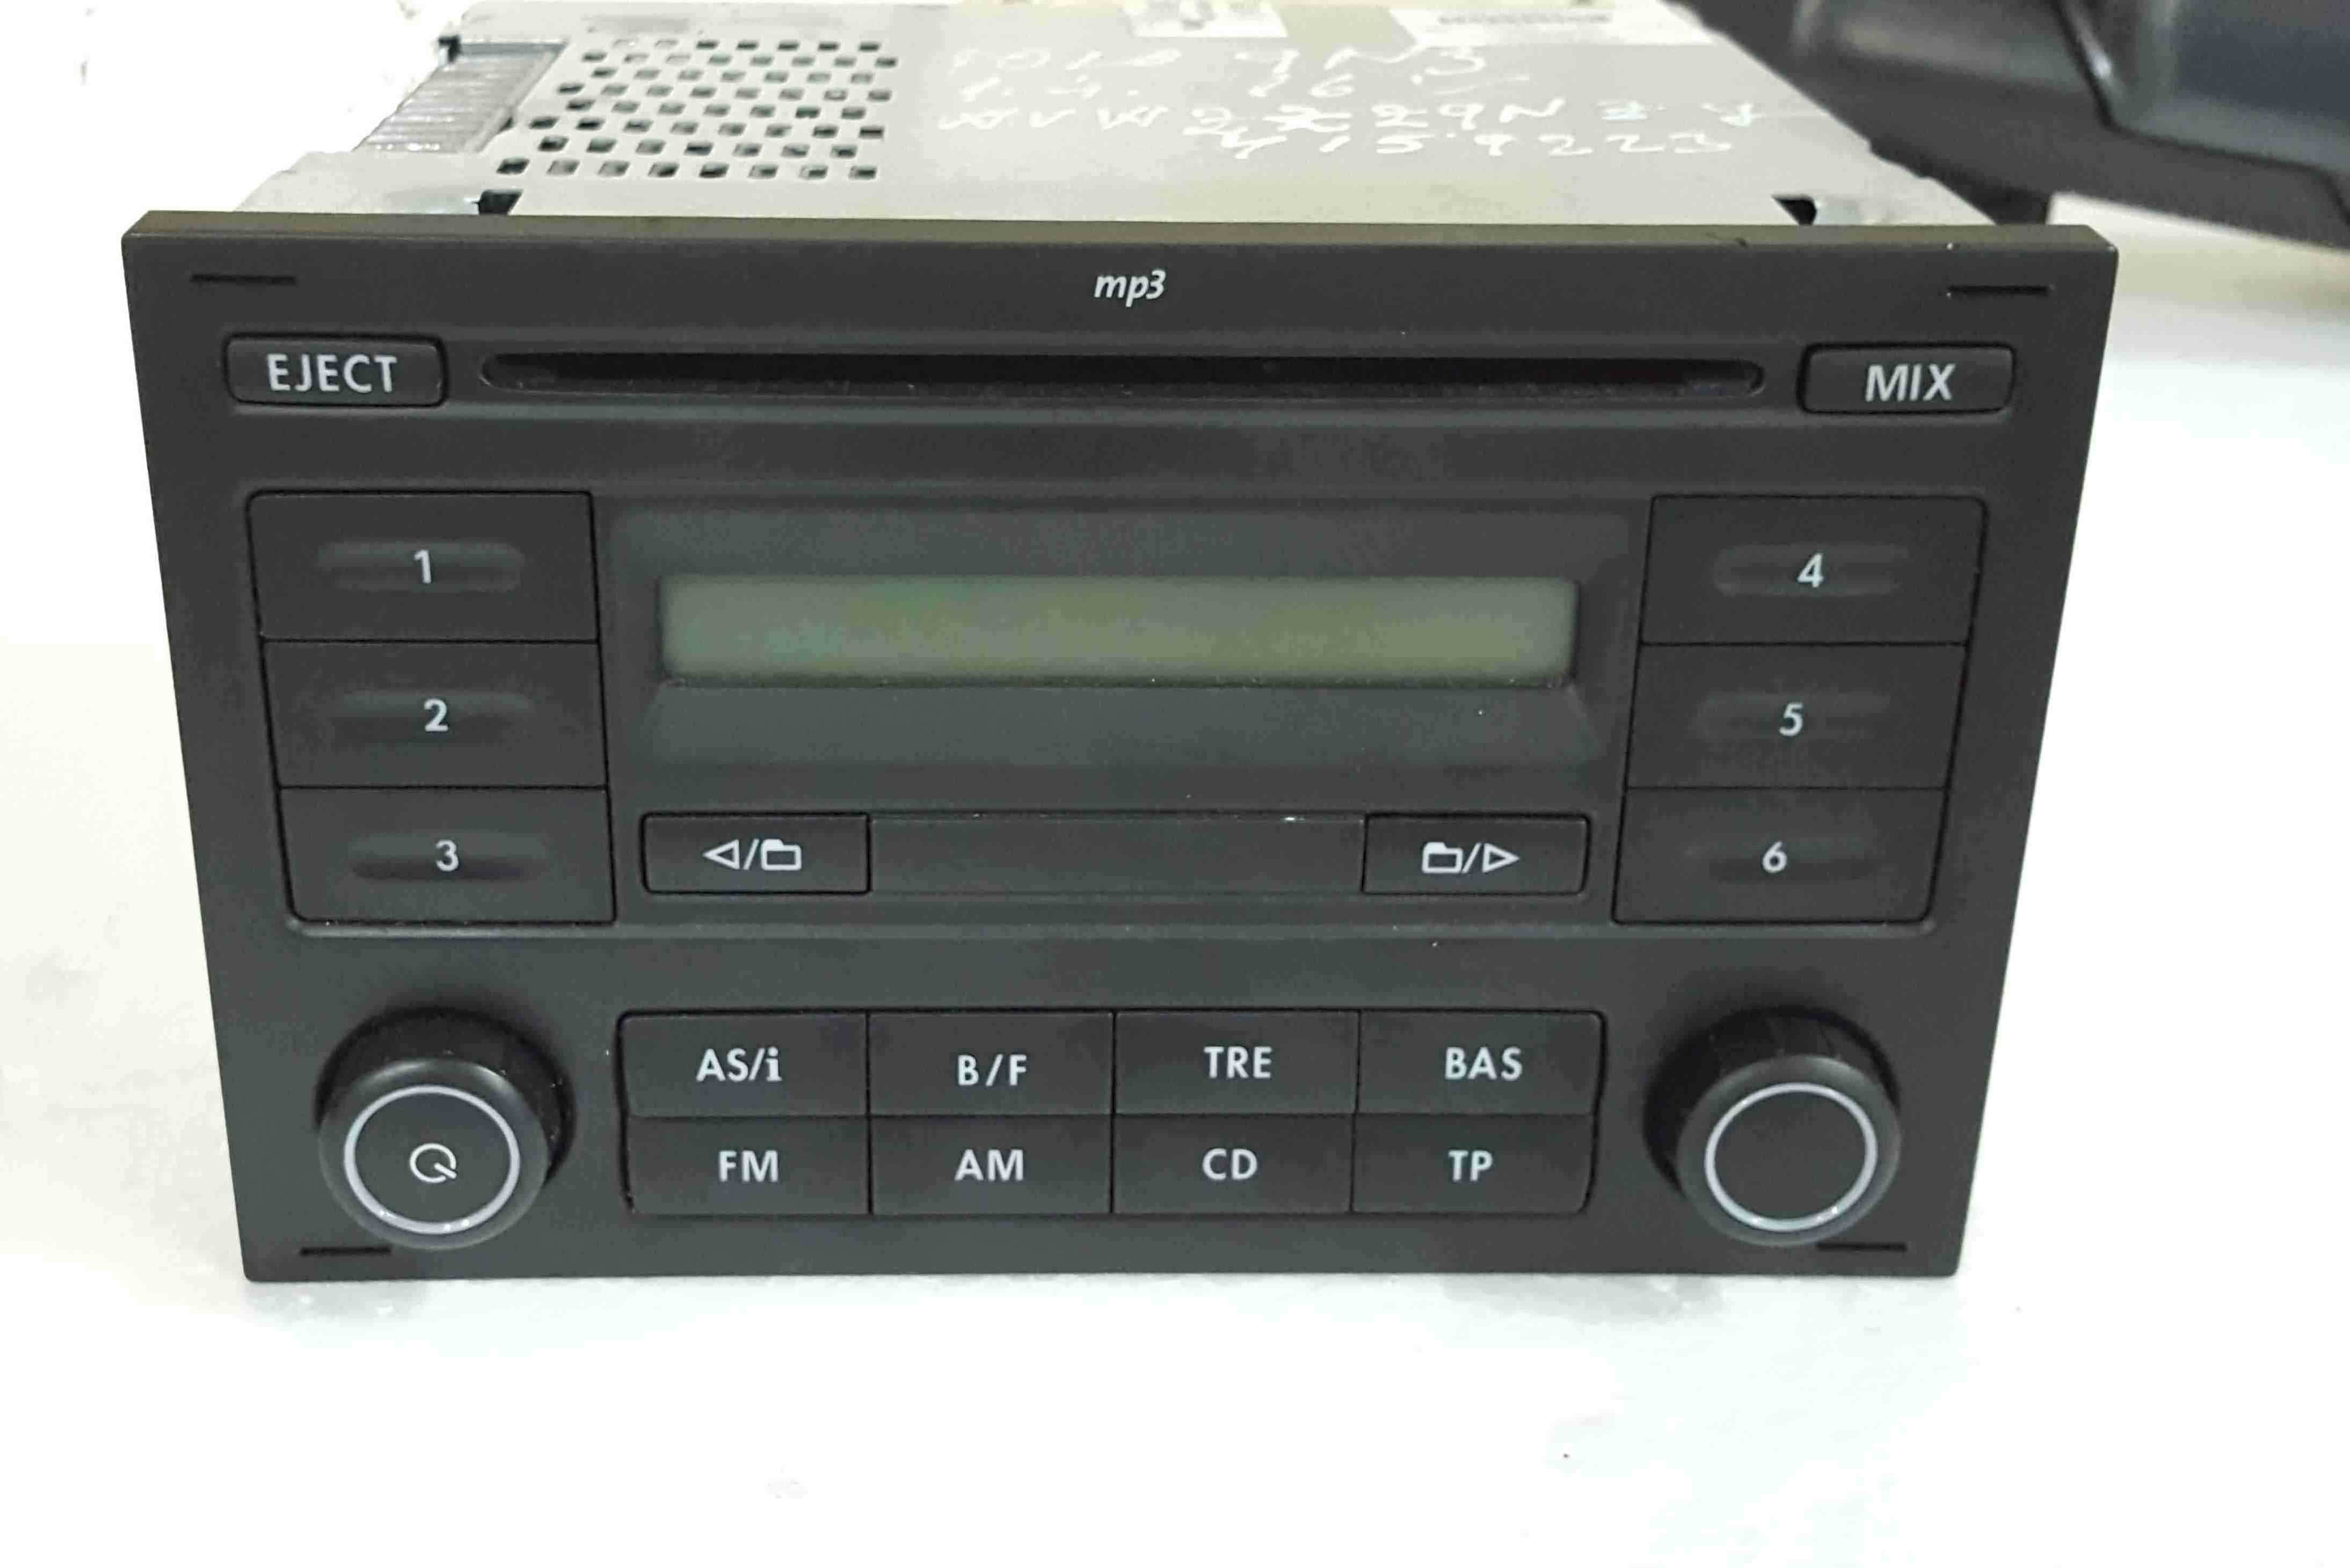 Volkswagen Polo 9N3 2006-2008 Radio Cd Player Head Unit WITH CODE  6Q0035152D - Store - Used Volkswagen Parts UK - Volkswagen Breakers